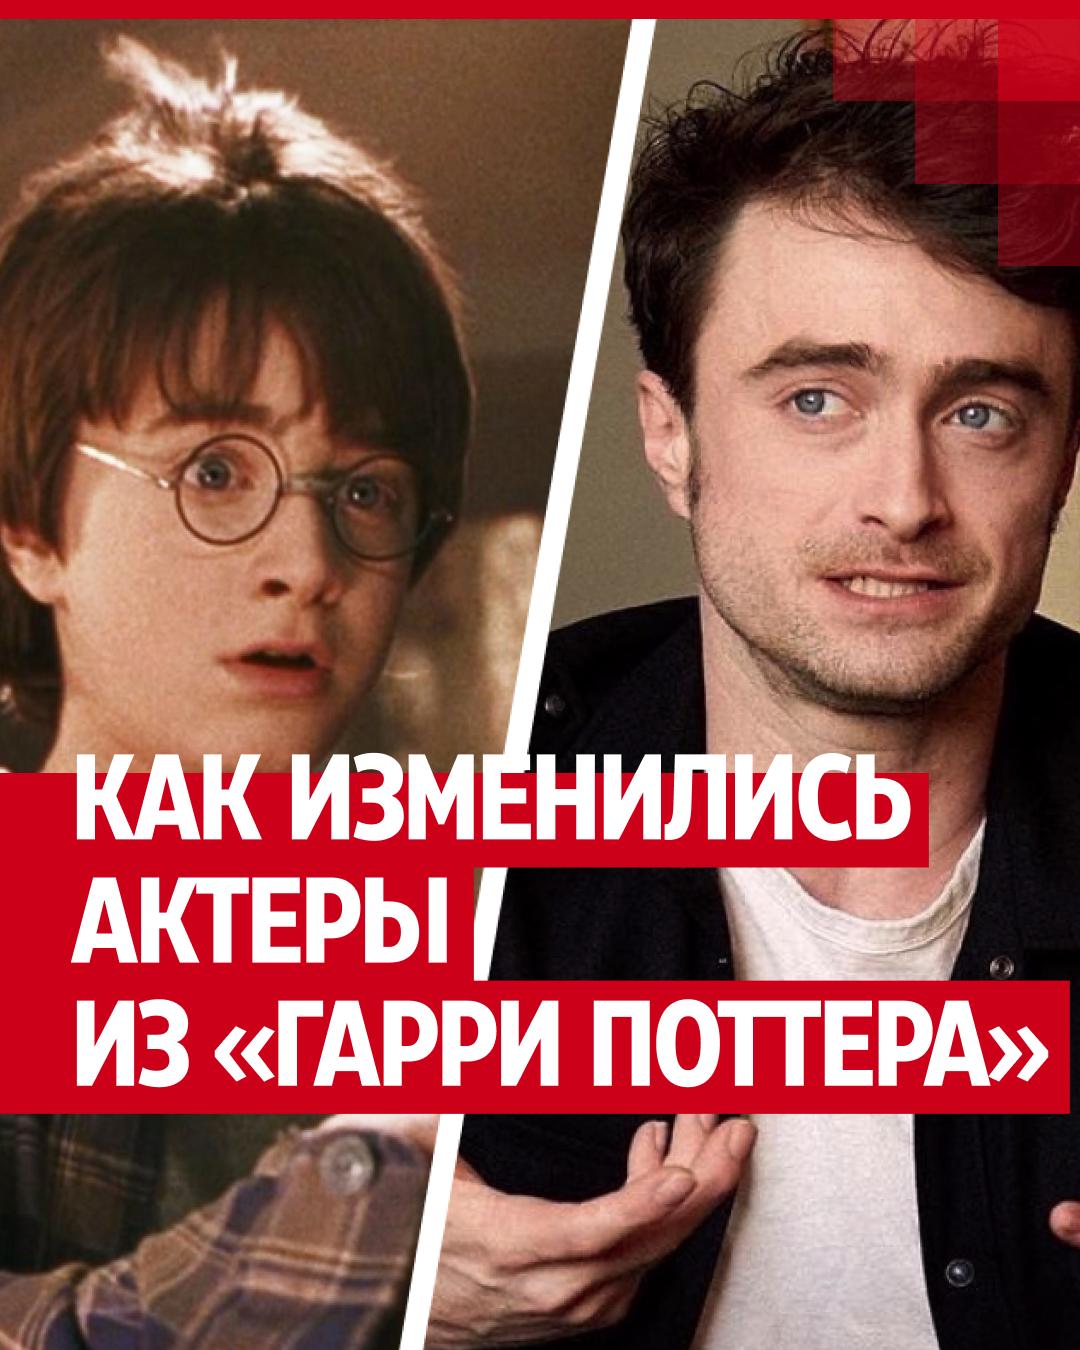 Как сейчас выглядят актёры из «Гарри Поттера»? Рэдклифф, Уотсон, Гринт 17 лет спустя. Фото